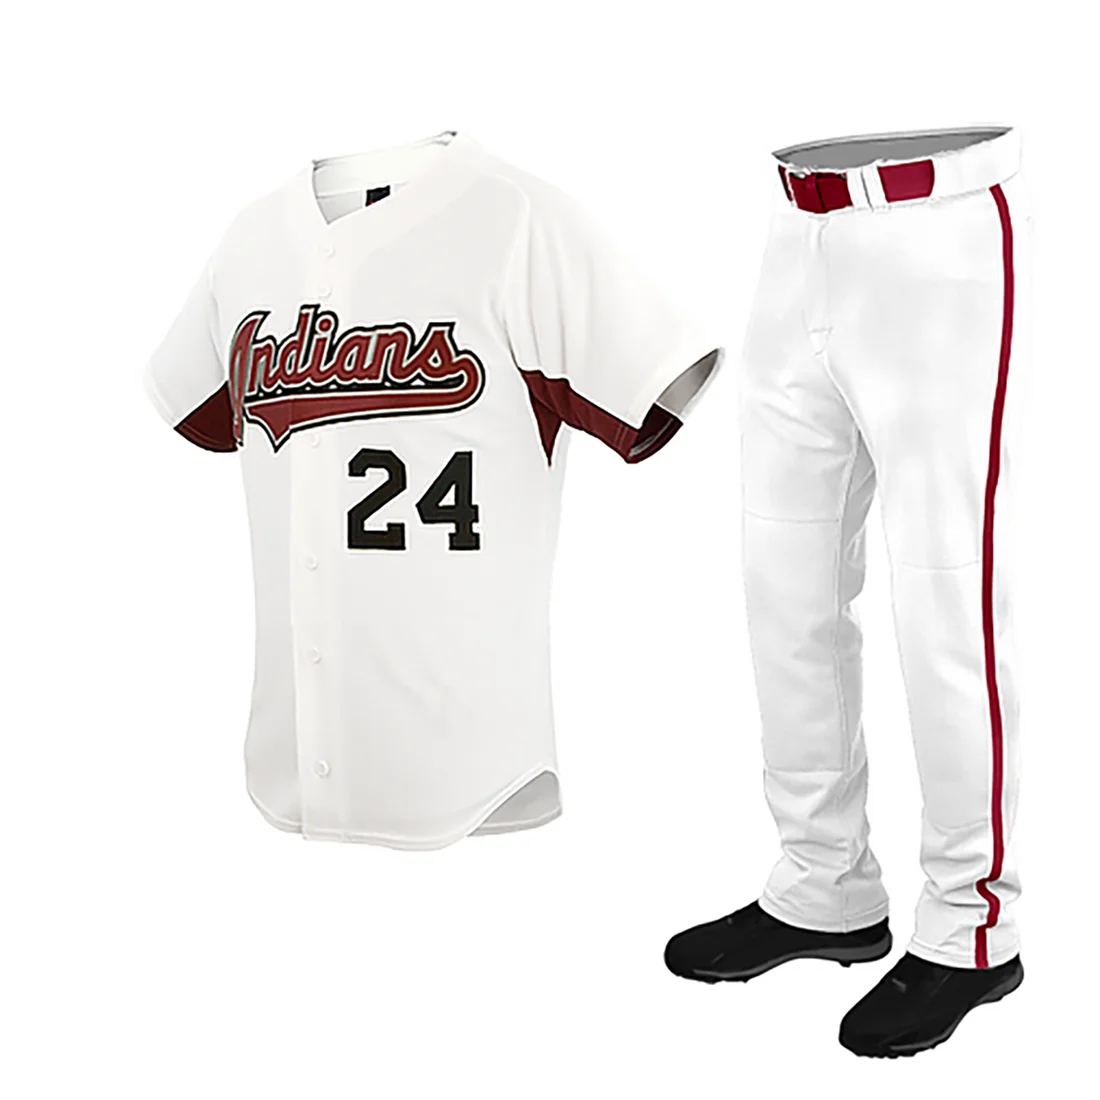 Unisex Button Down Plain Red Stripe Baseball Jerseys | YoungSpeeds